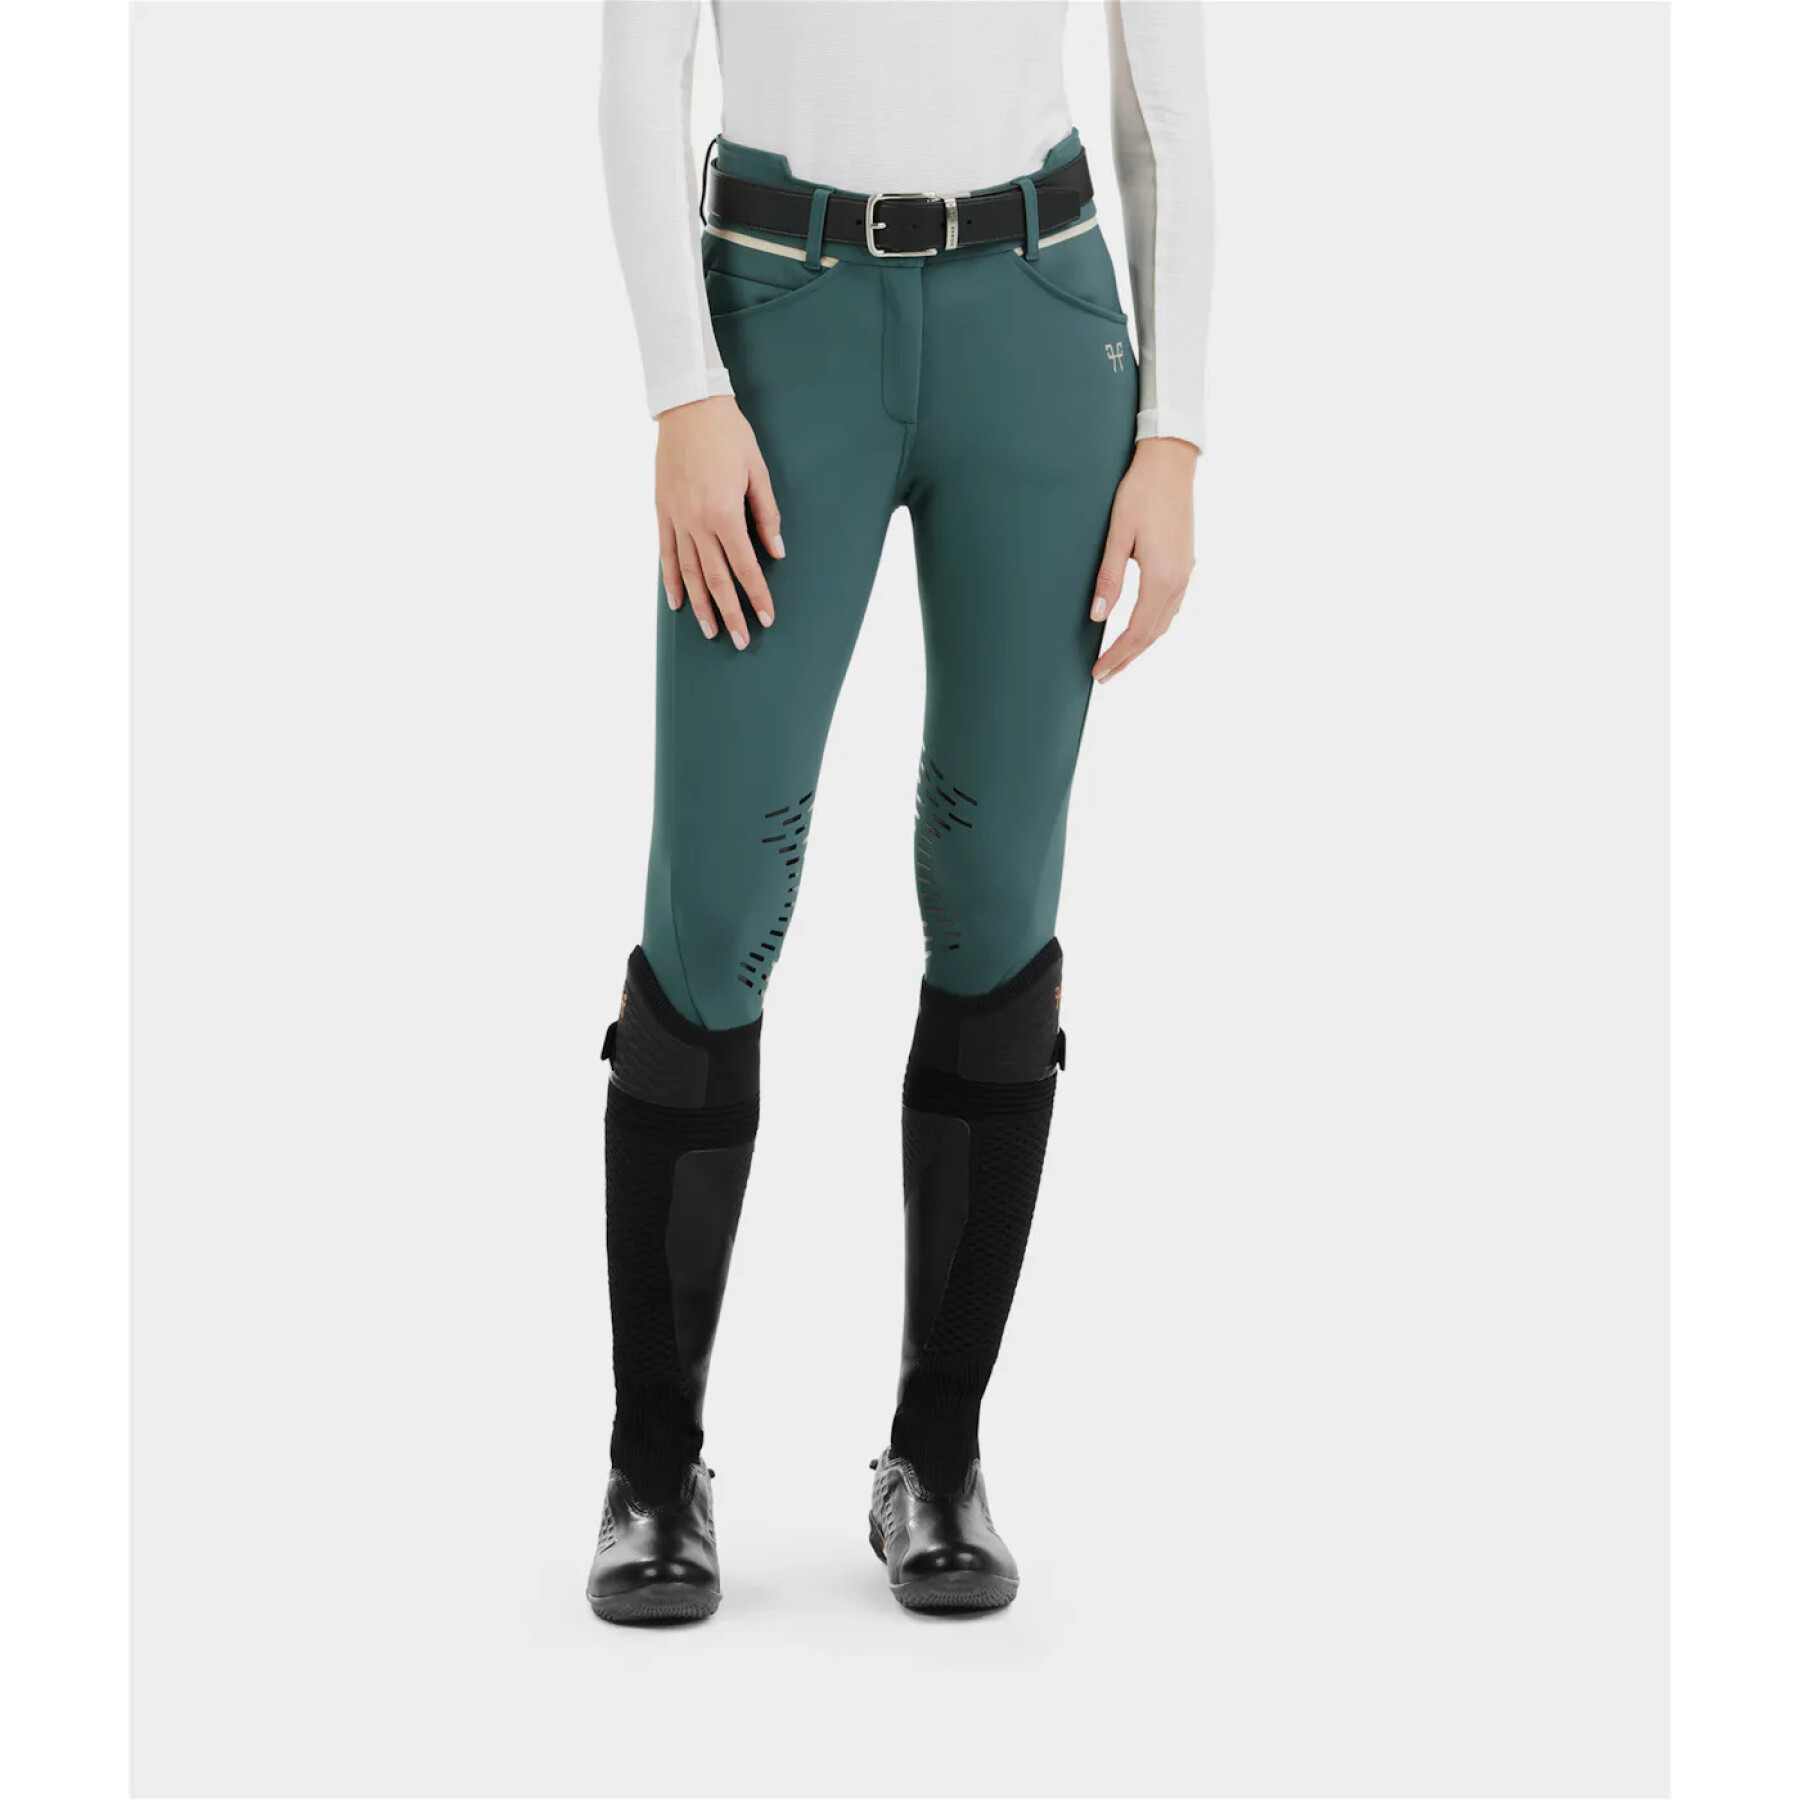 Pantalon équitation mid grip femme Horse Pilot X-Design